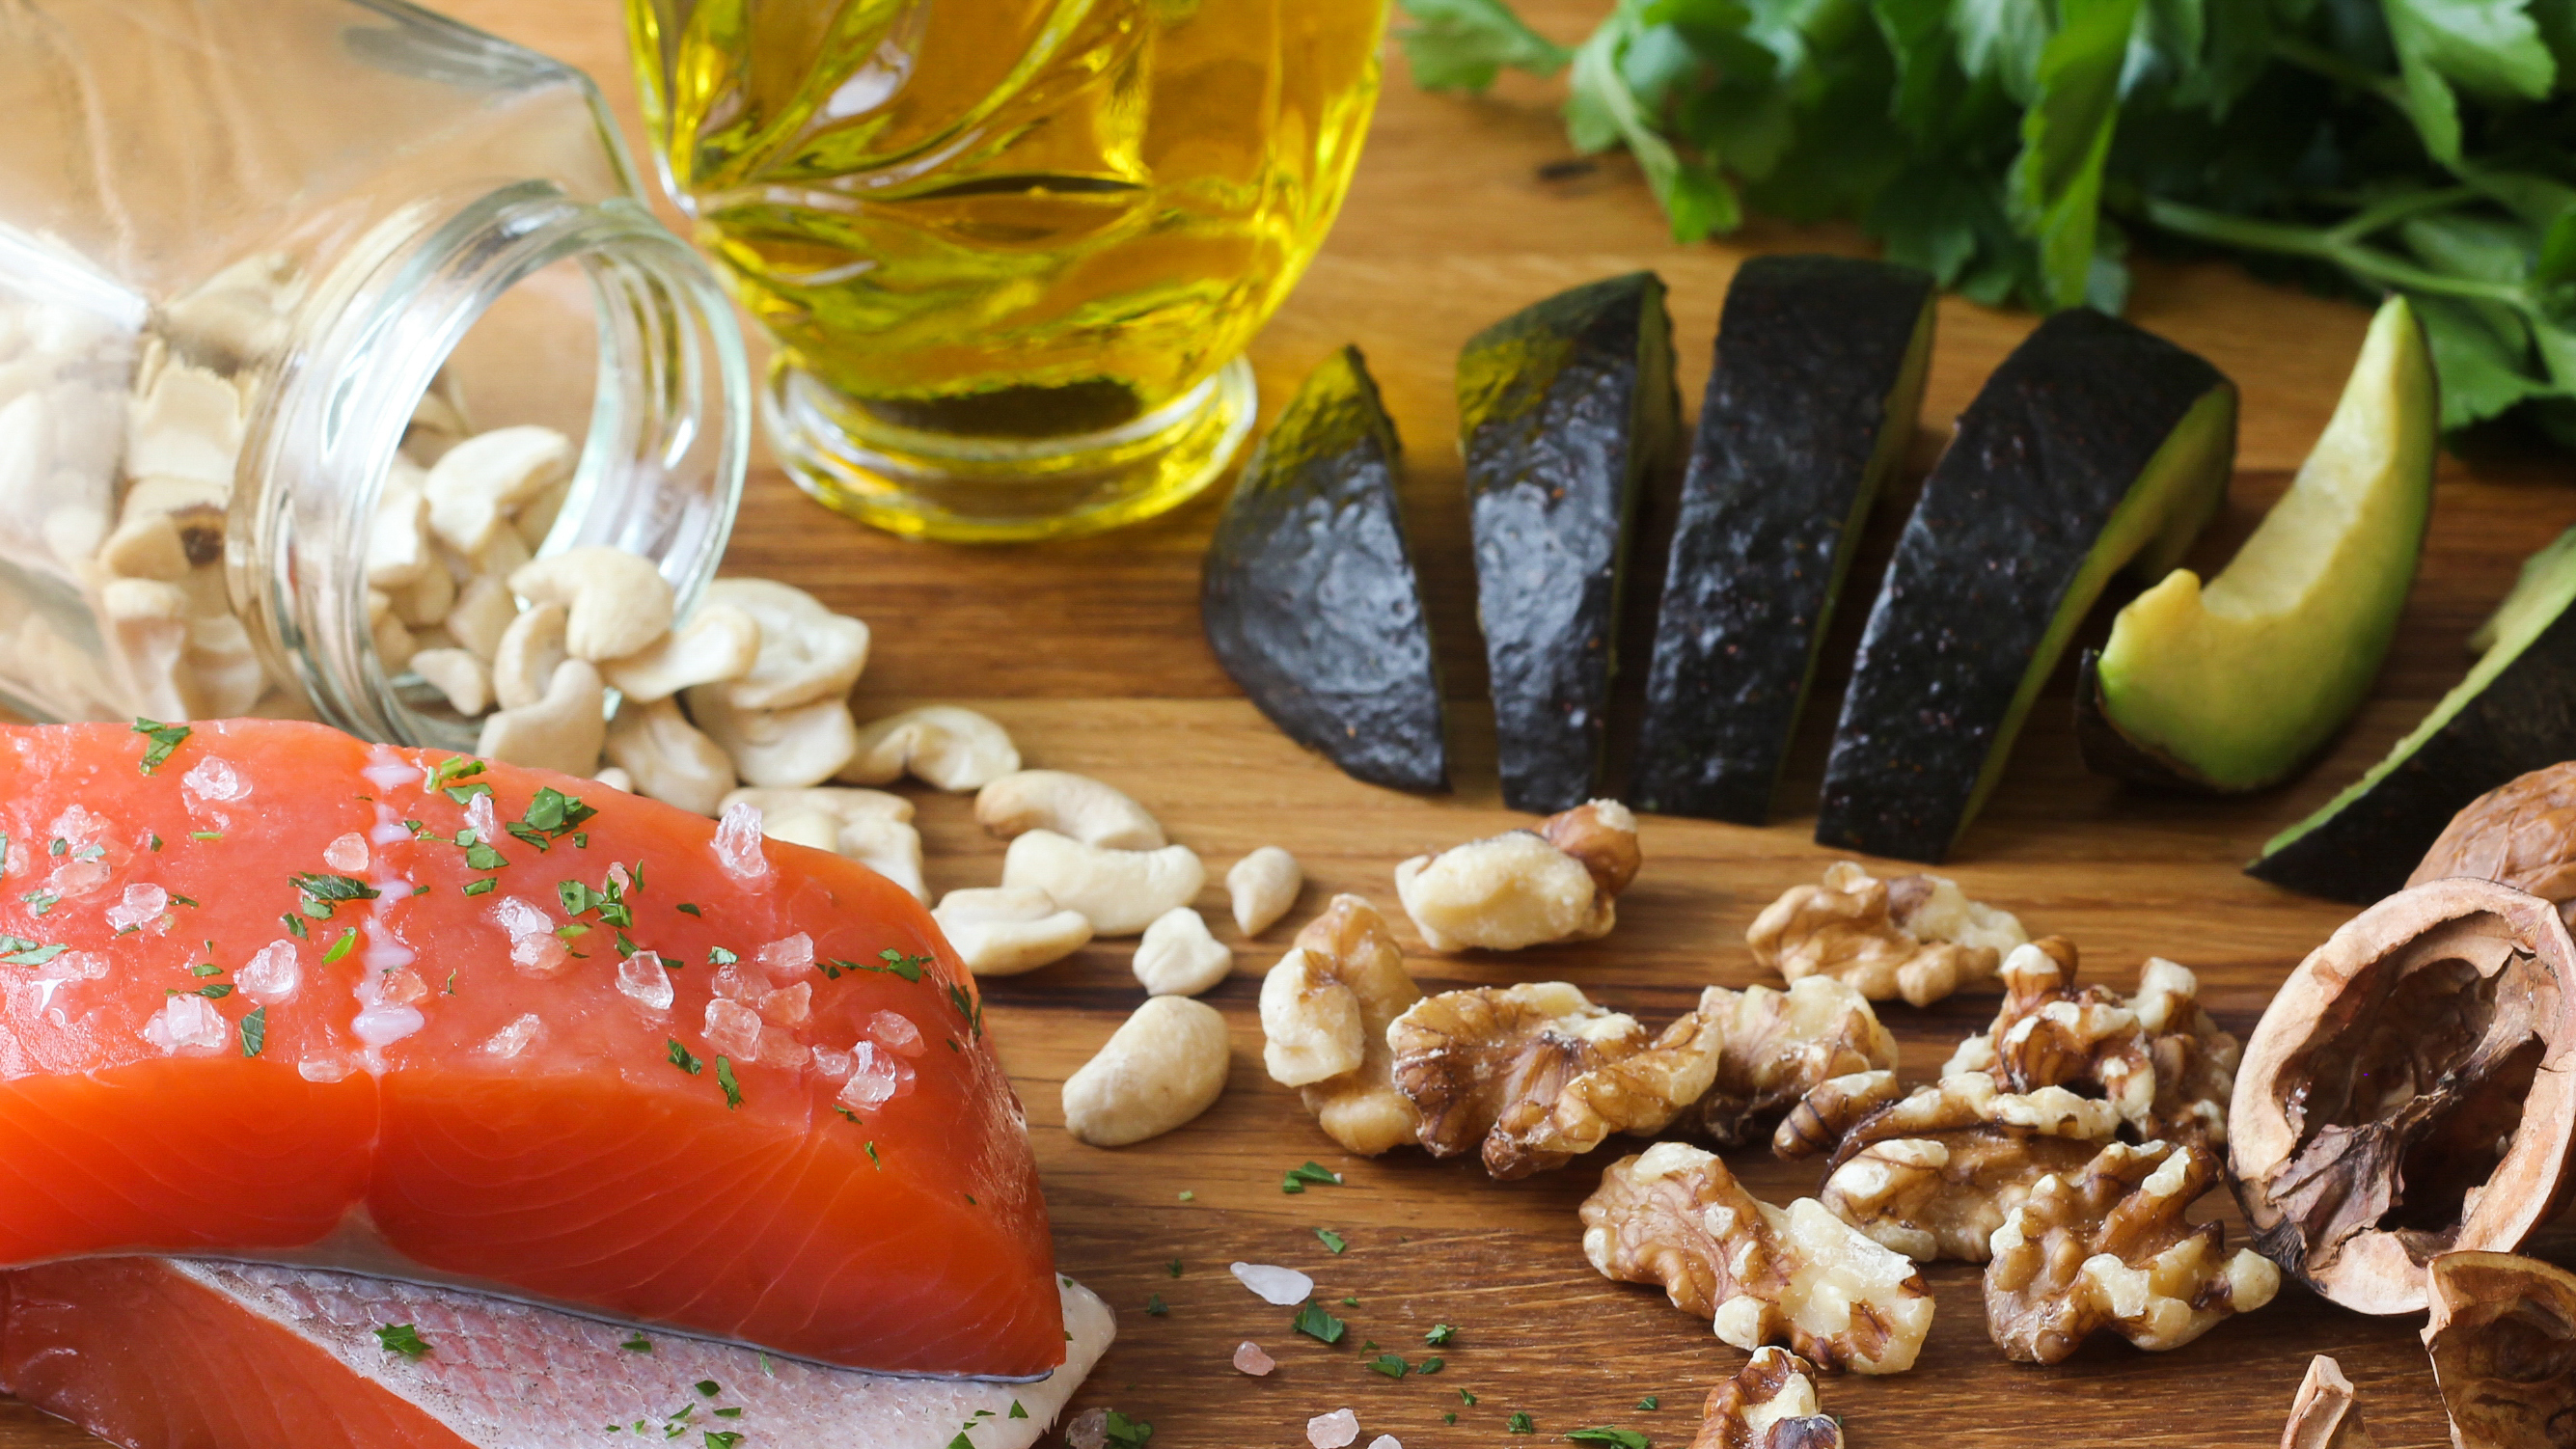 El pescado de aguas profundas, la palta, los frutos secos y el aceite de oliva son algunas de las fuentes de Omega 3 (Getty)